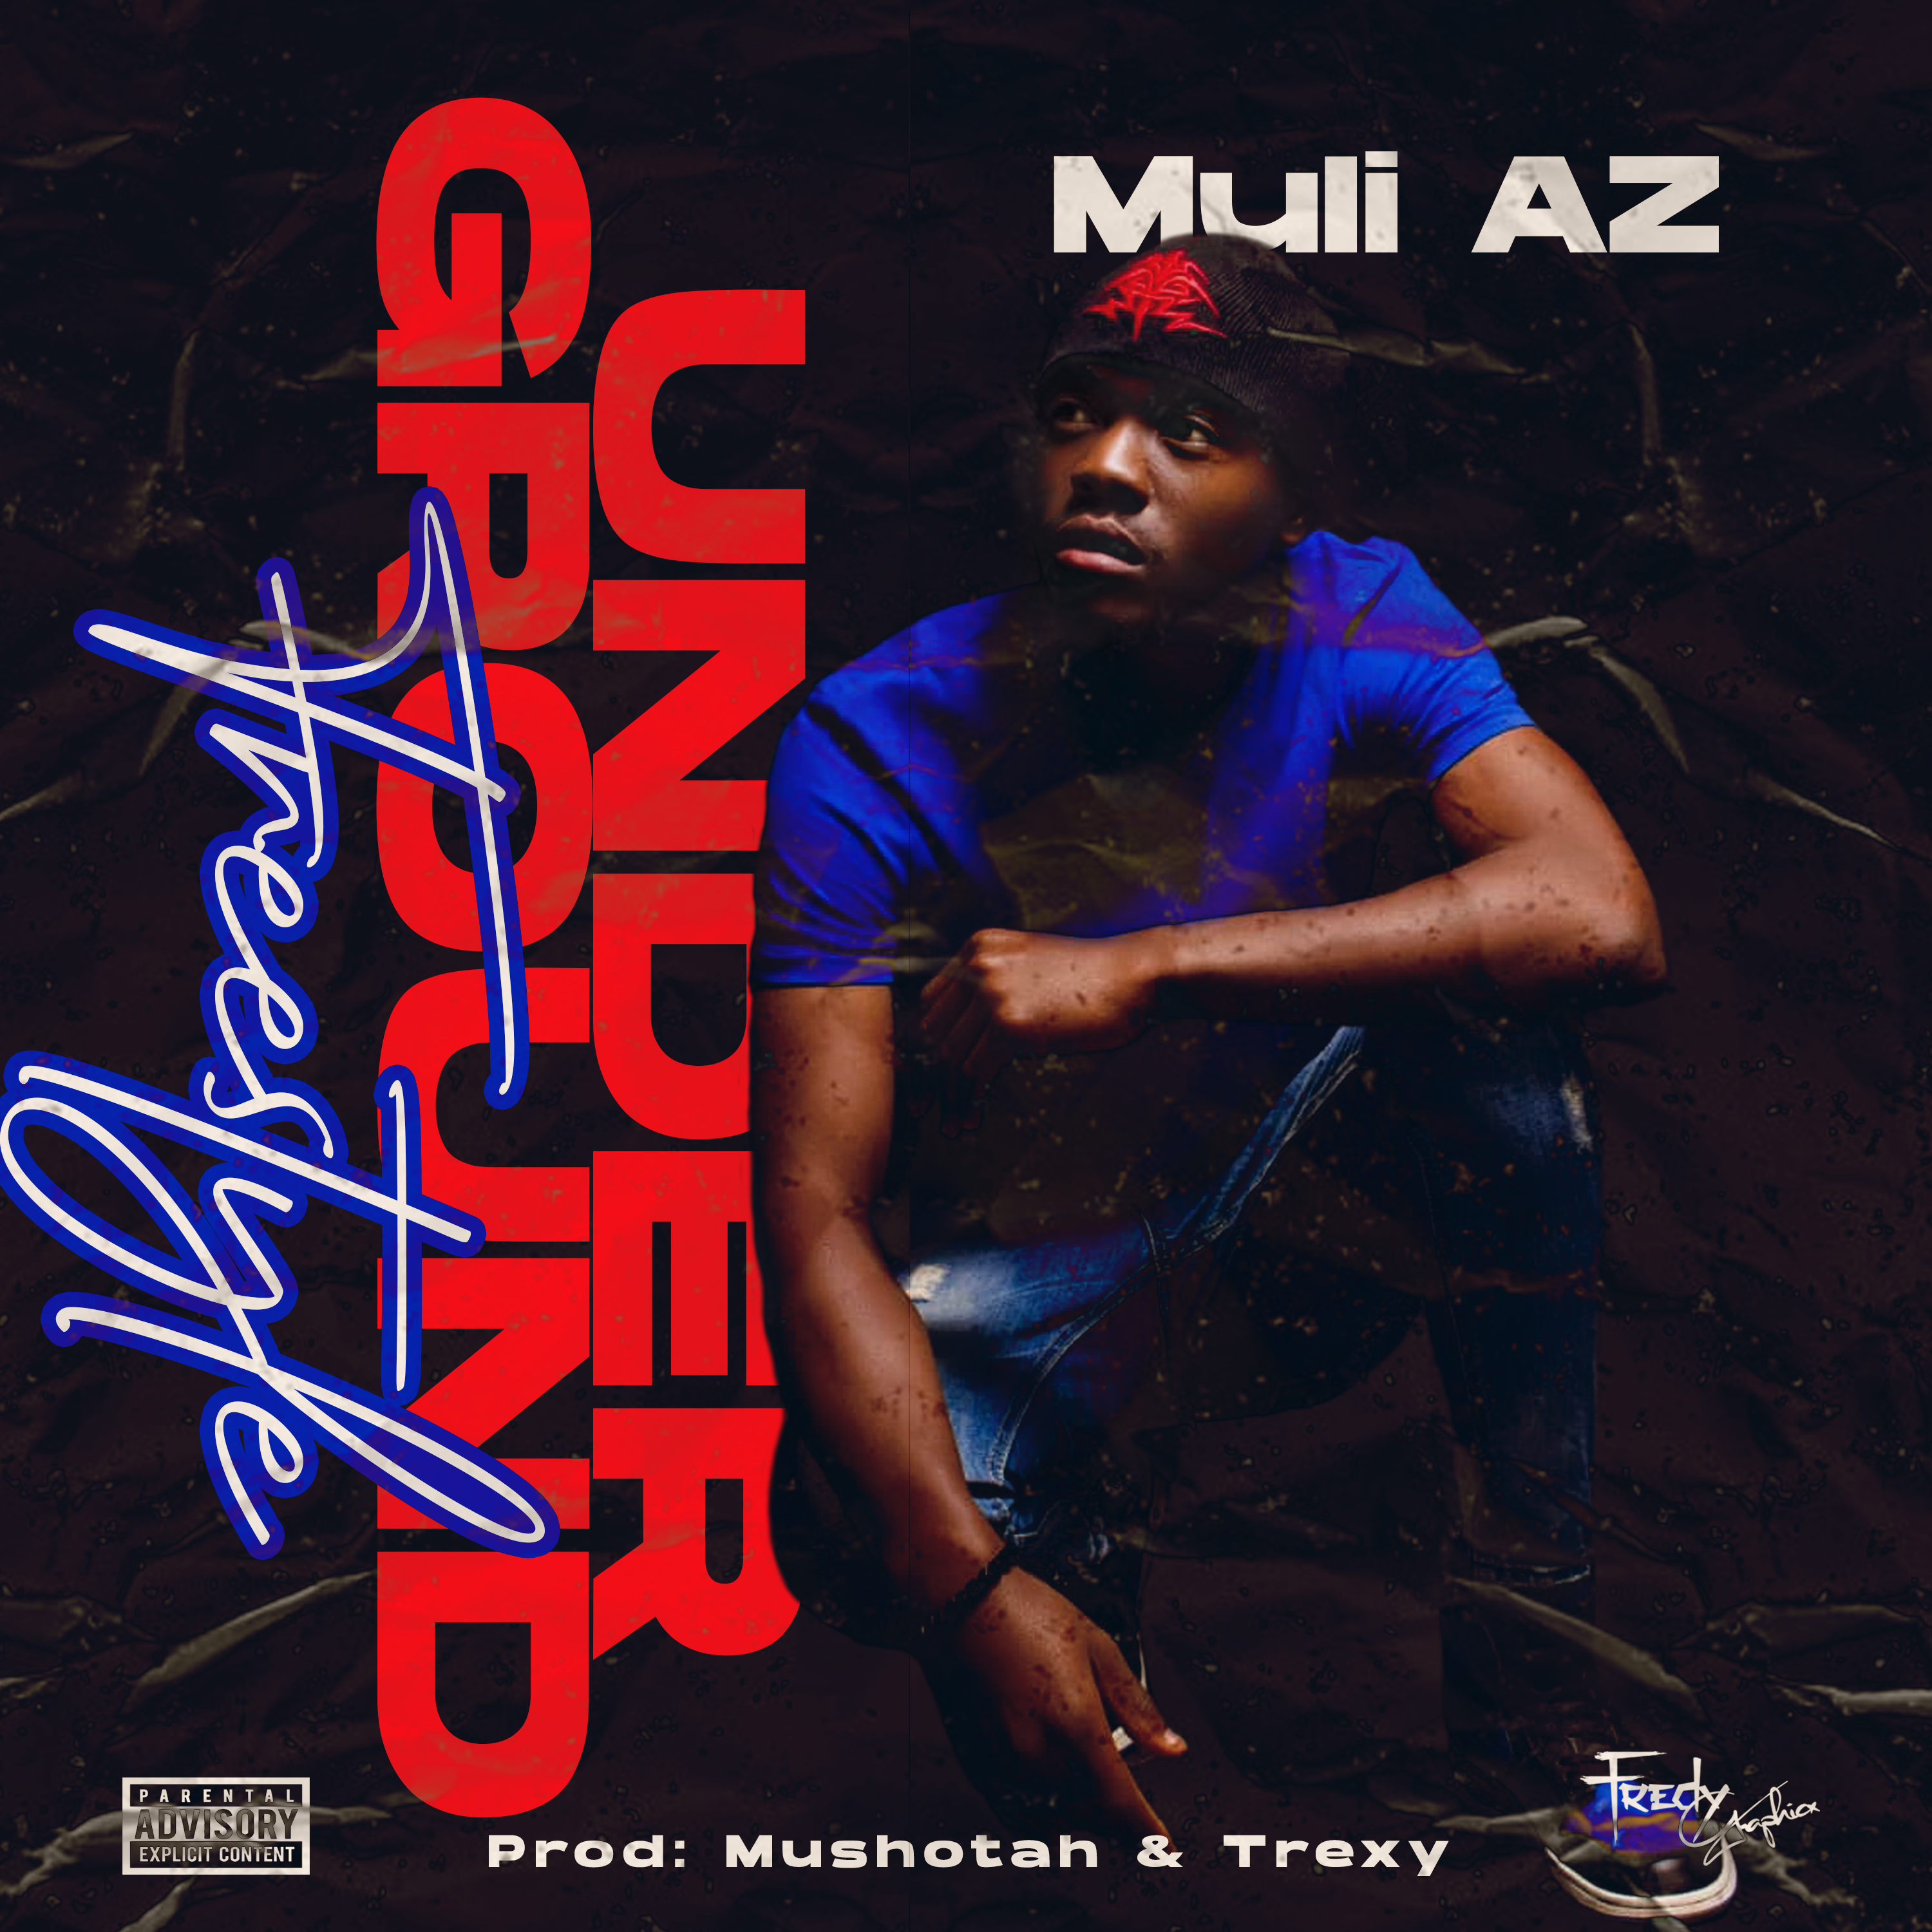 Muli Az - Underground Freestyle